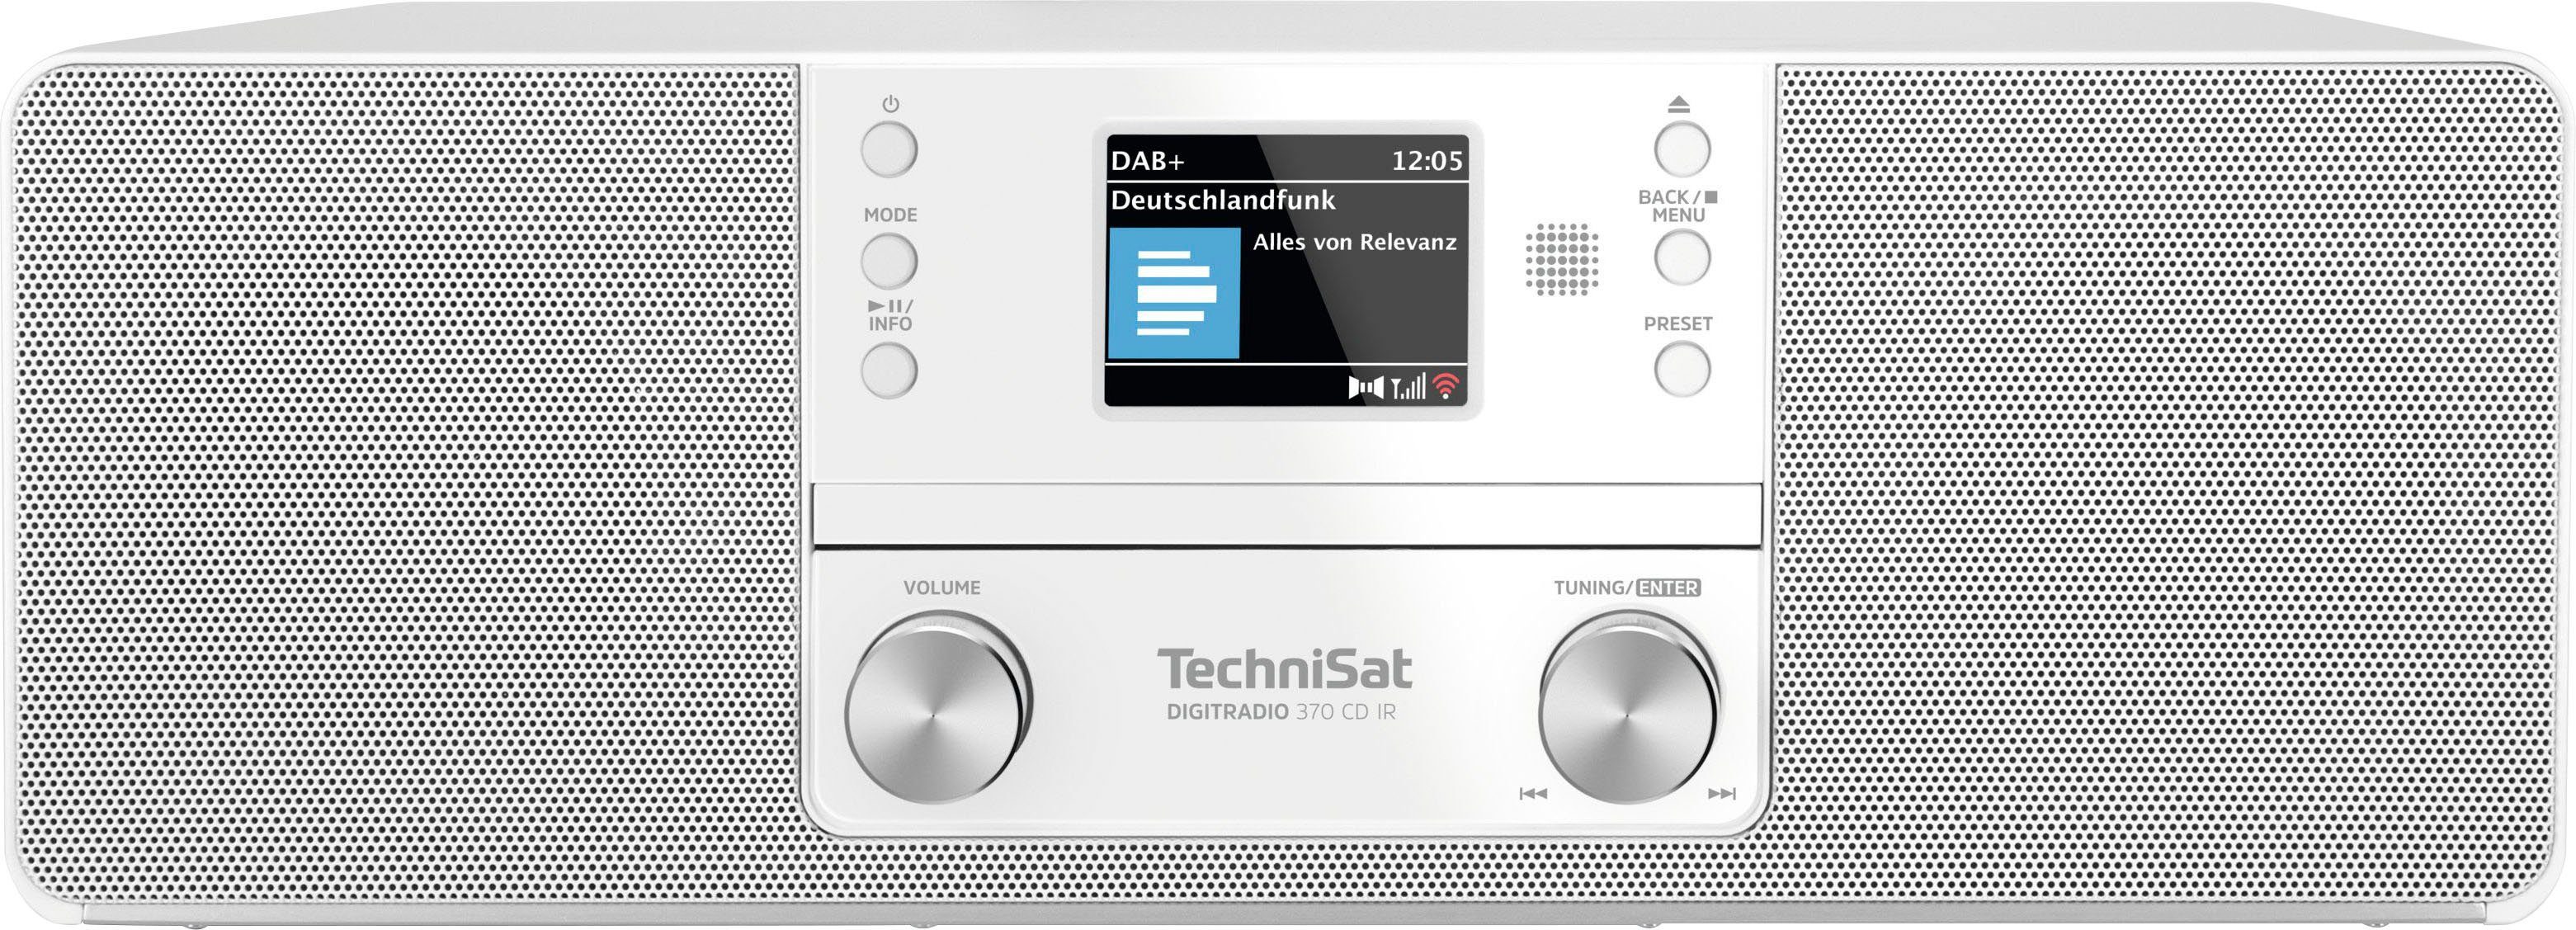 TechniSat DIGITRADIO 370 (Digitalradio 10 Digitalradio (DAB), UKW mit weiß (DAB) RDS, W) CD IR